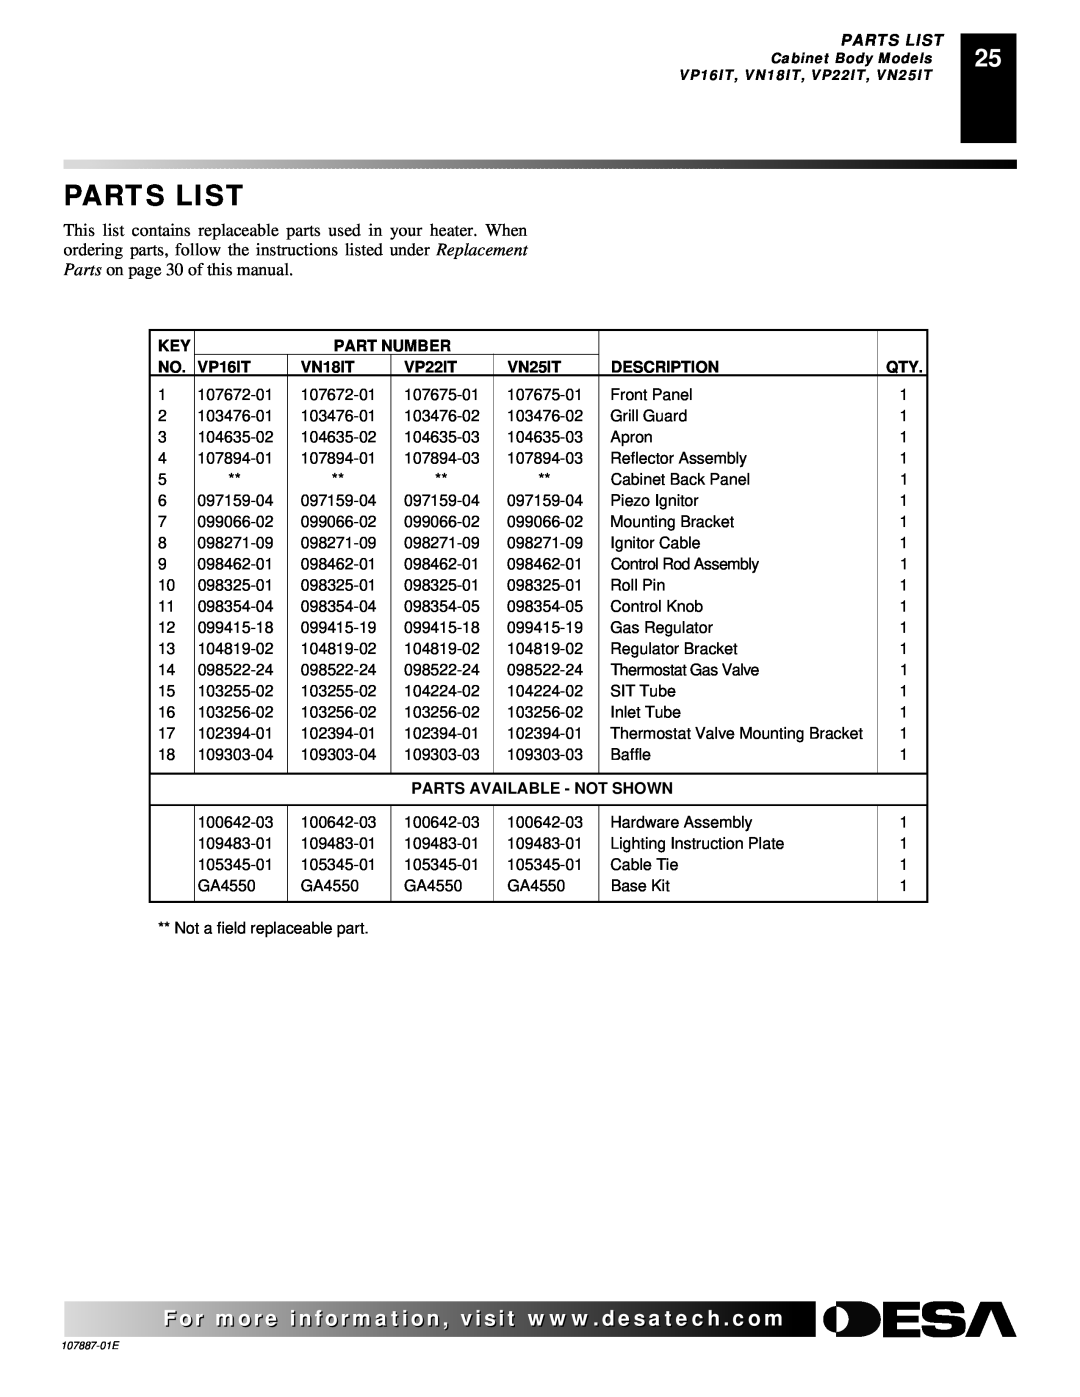 Desa VP26, VN30T, VP16T Parts List, Part Number, VP16IT, VN18IT, VP22IT, VN25IT, Description, Parts Available - Not Shown 